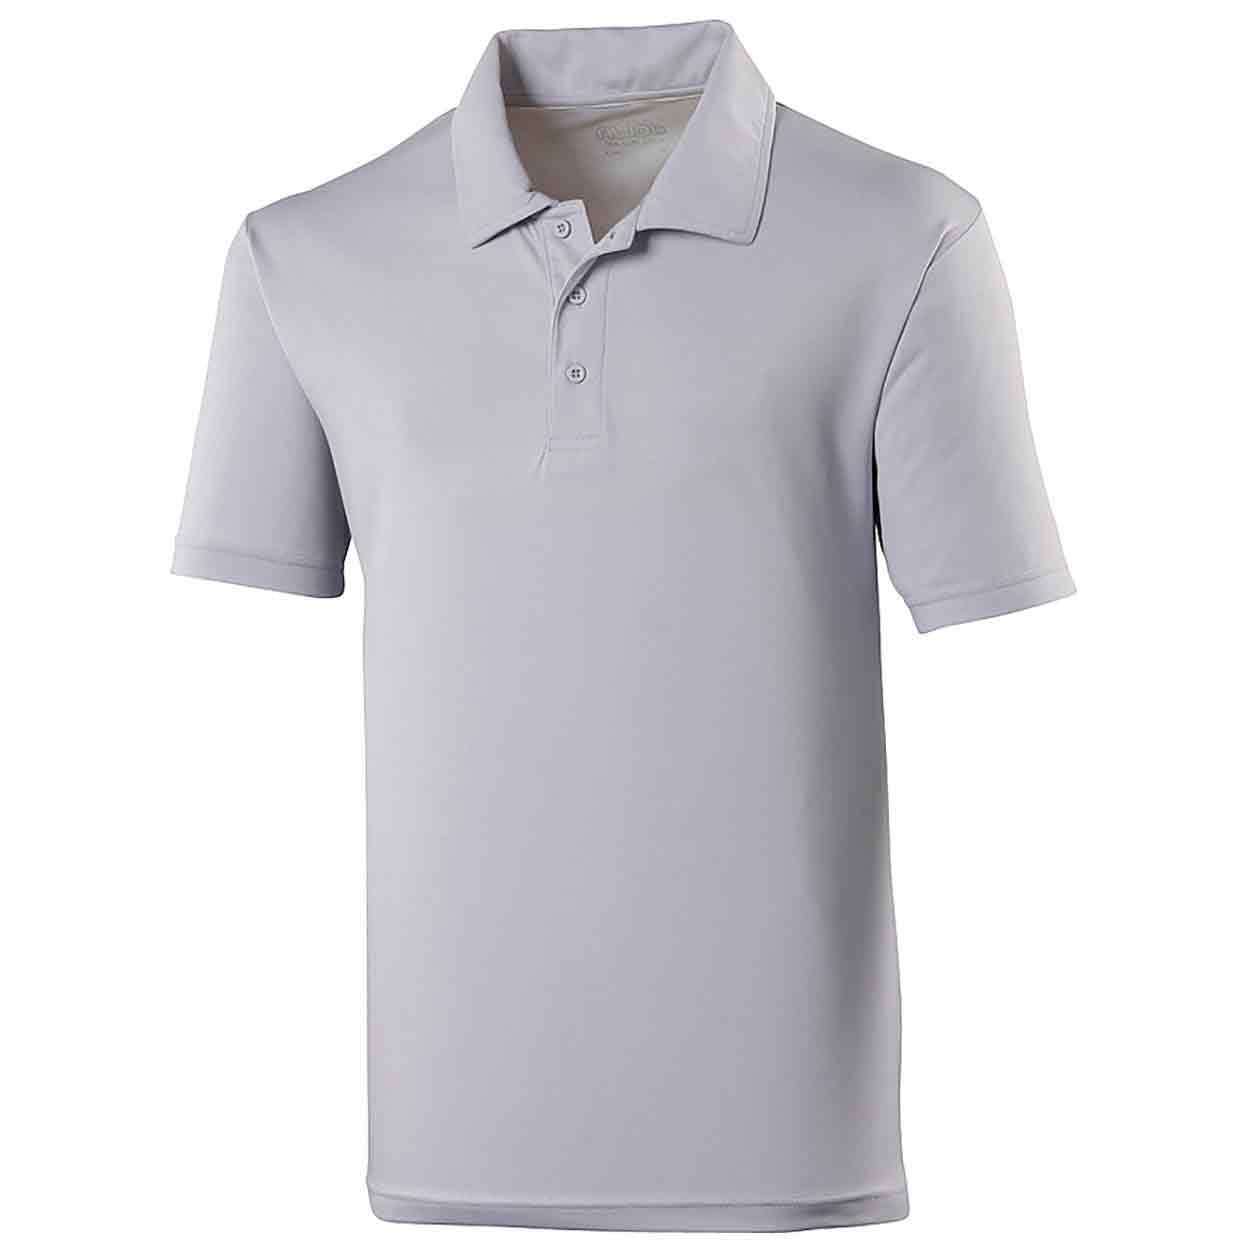 AWDis Cool Polo - Plain Poly Cotton Polo Shirts - PolyCotton Polo Shirts -  Mens Polo Shirts - Polo Shirts - Leisurewear - Best Workwear